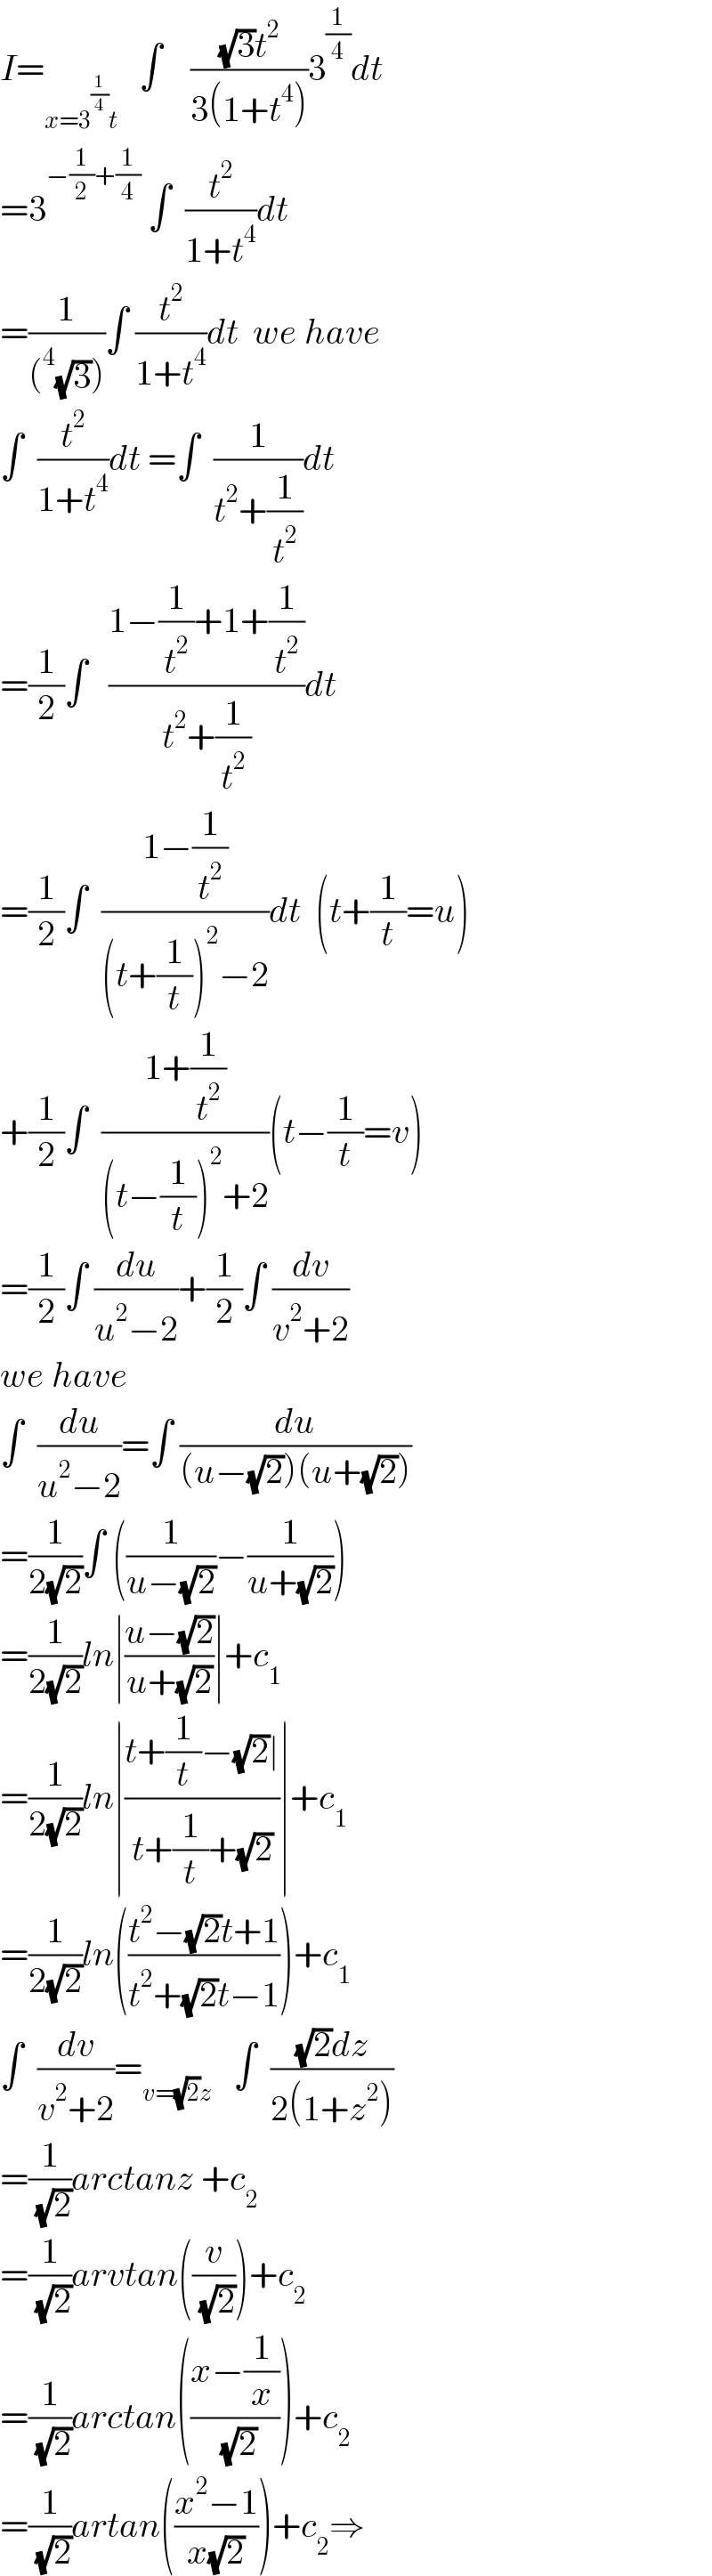 I=_(x=3^(1/4) t)    ∫    (((√3)t^2 )/(3(1+t^4 )))3^(1/4) dt  =3^(−(1/2)+(1/4))  ∫  (t^2 /(1+t^4 ))dt  =(1/((^4 (√3))))∫ (t^2 /(1+t^4 ))dt  we have  ∫  (t^2 /(1+t^4 ))dt =∫  (1/(t^2 +(1/t^2 )))dt  =(1/2)∫   ((1−(1/t^2 )+1+(1/t^2 ))/(t^2 +(1/t^2 )))dt  =(1/2)∫  ((1−(1/t^2 ))/((t+(1/t))^2 −2))dt  (t+(1/t)=u)  +(1/2)∫  ((1+(1/t^2 ))/((t−(1/t))^2 +2))(t−(1/t)=v)  =(1/2)∫ (du/(u^2 −2))+(1/2)∫ (dv/(v^2 +2))  we have  ∫  (du/(u^2 −2))=∫ (du/((u−(√2))(u+(√2))))  =(1/(2(√2)))∫ ((1/(u−(√2)))−(1/(u+(√2))))  =(1/(2(√2)))ln∣((u−(√2))/(u+(√2)))∣+c_1   =(1/(2(√2)))ln∣((t+(1/t)−(√2)∣)/(t+(1/t)+(√2)))∣+c_1   =(1/(2(√2)))ln(((t^2 −(√2)t+1)/(t^2 +(√2)t−1)))+c_1   ∫  (dv/(v^2 +2))=_(v=(√2)z)    ∫  (((√2)dz)/(2(1+z^2 )))  =(1/( (√2)))arctanz +c_2   =(1/( (√2)))arvtan((v/( (√2))))+c_2   =(1/( (√2)))arctan(((x−(1/x))/( (√2))))+c_2   =(1/( (√2)))artan(((x^2 −1)/(x(√2))))+c_2 ⇒  